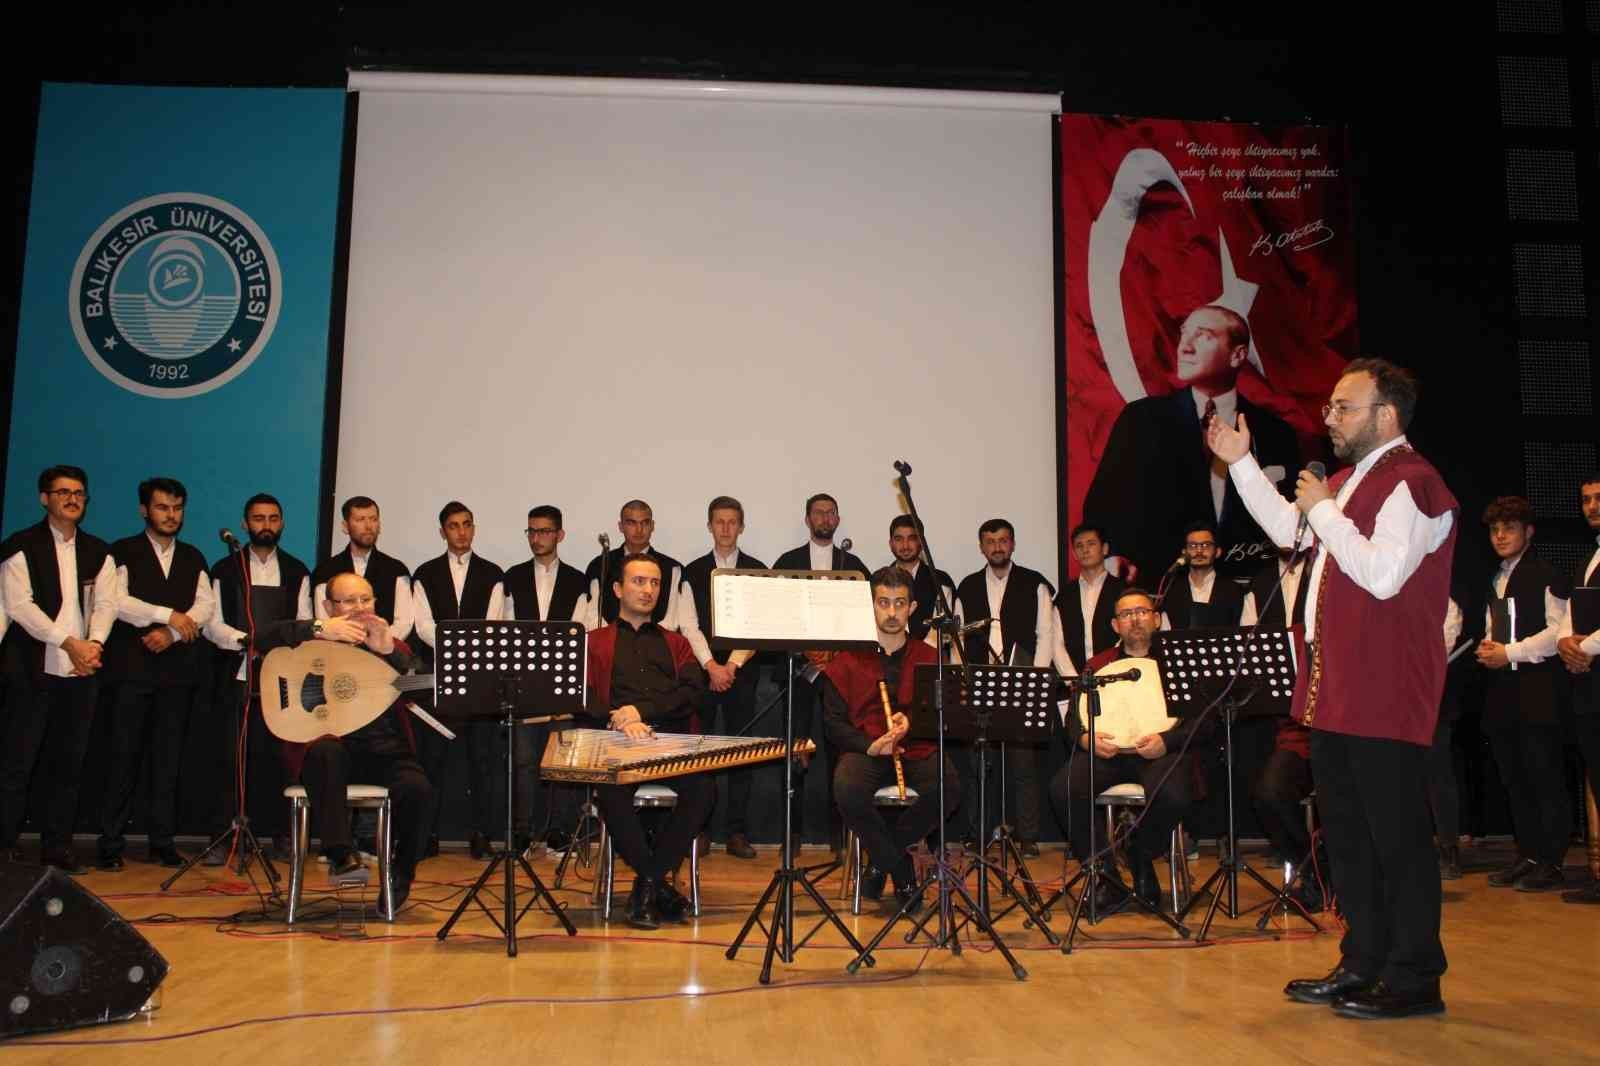 Balıkesir İlahiyat Fakültesi Türk Tasavvuf Müziği Topluluğu ilk konserini verdi #balikesir